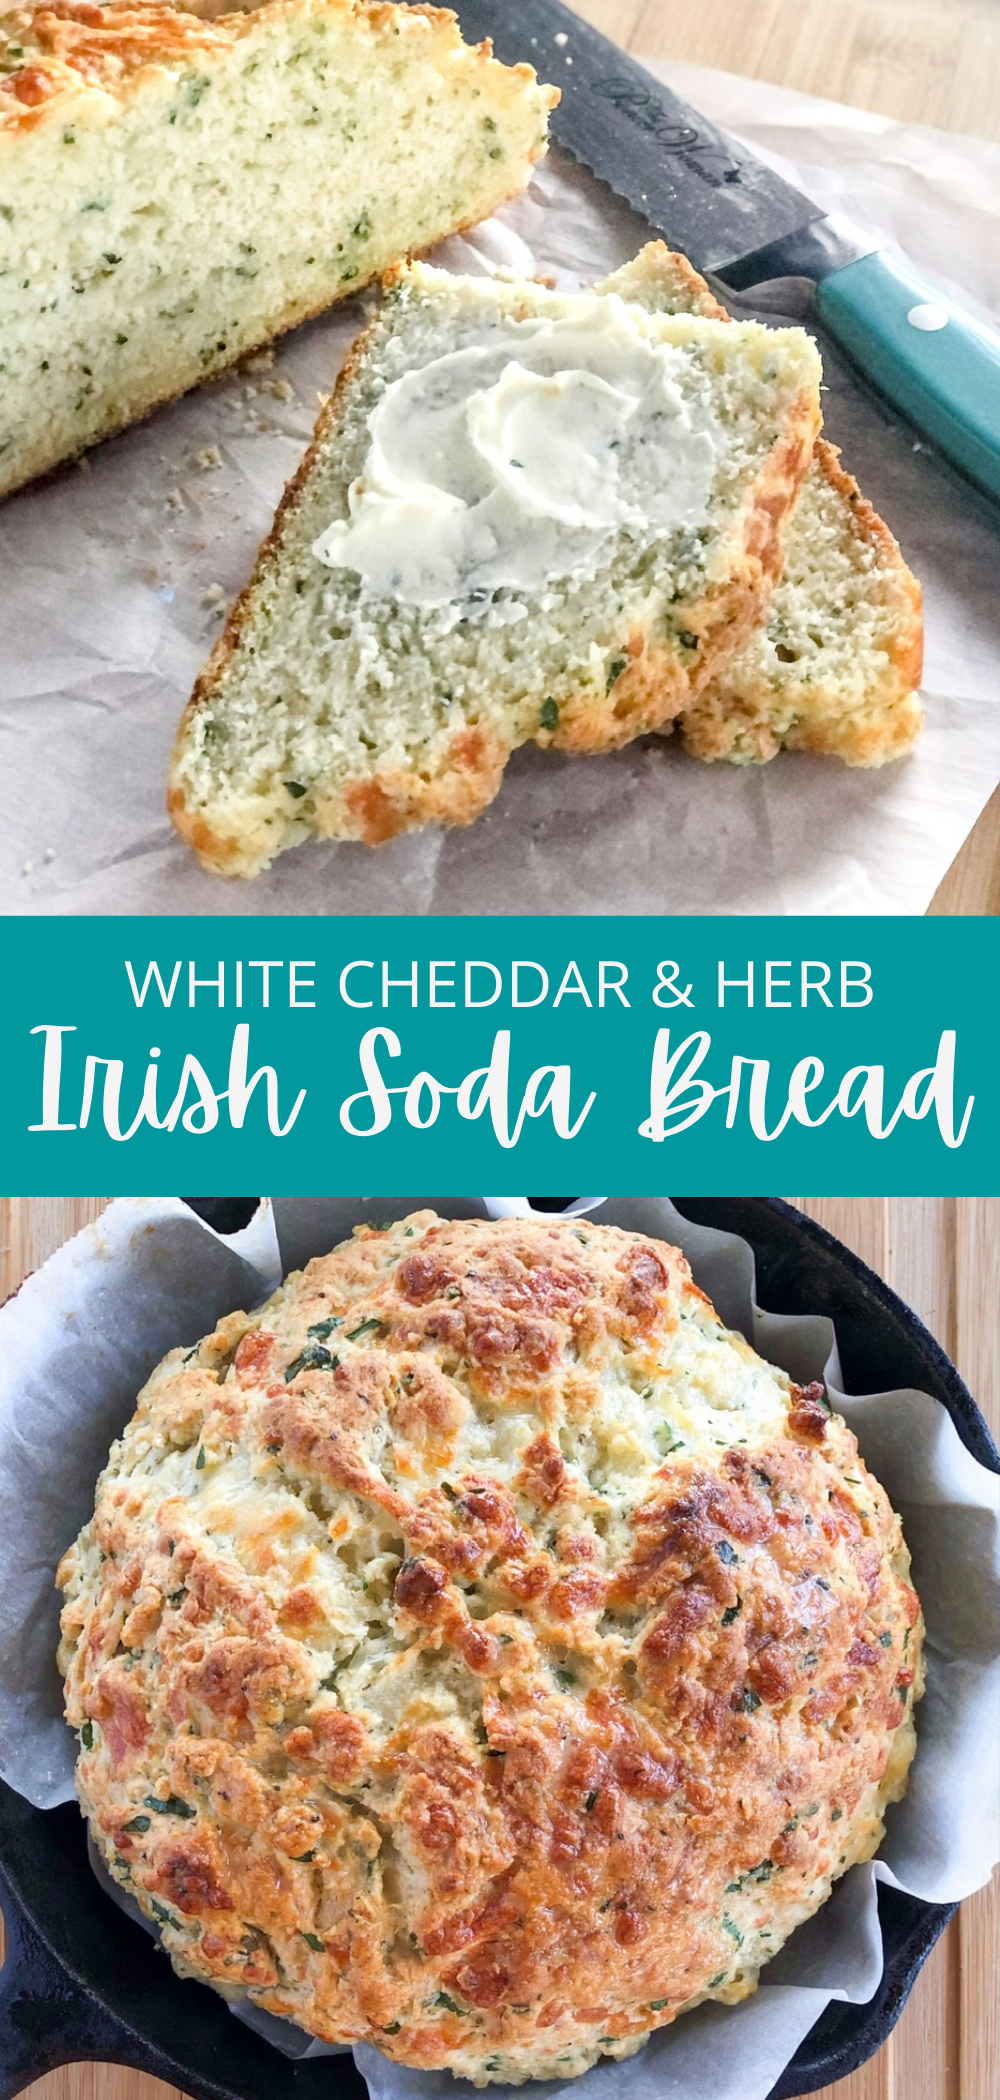 white cheddar and herb Irish soda bread